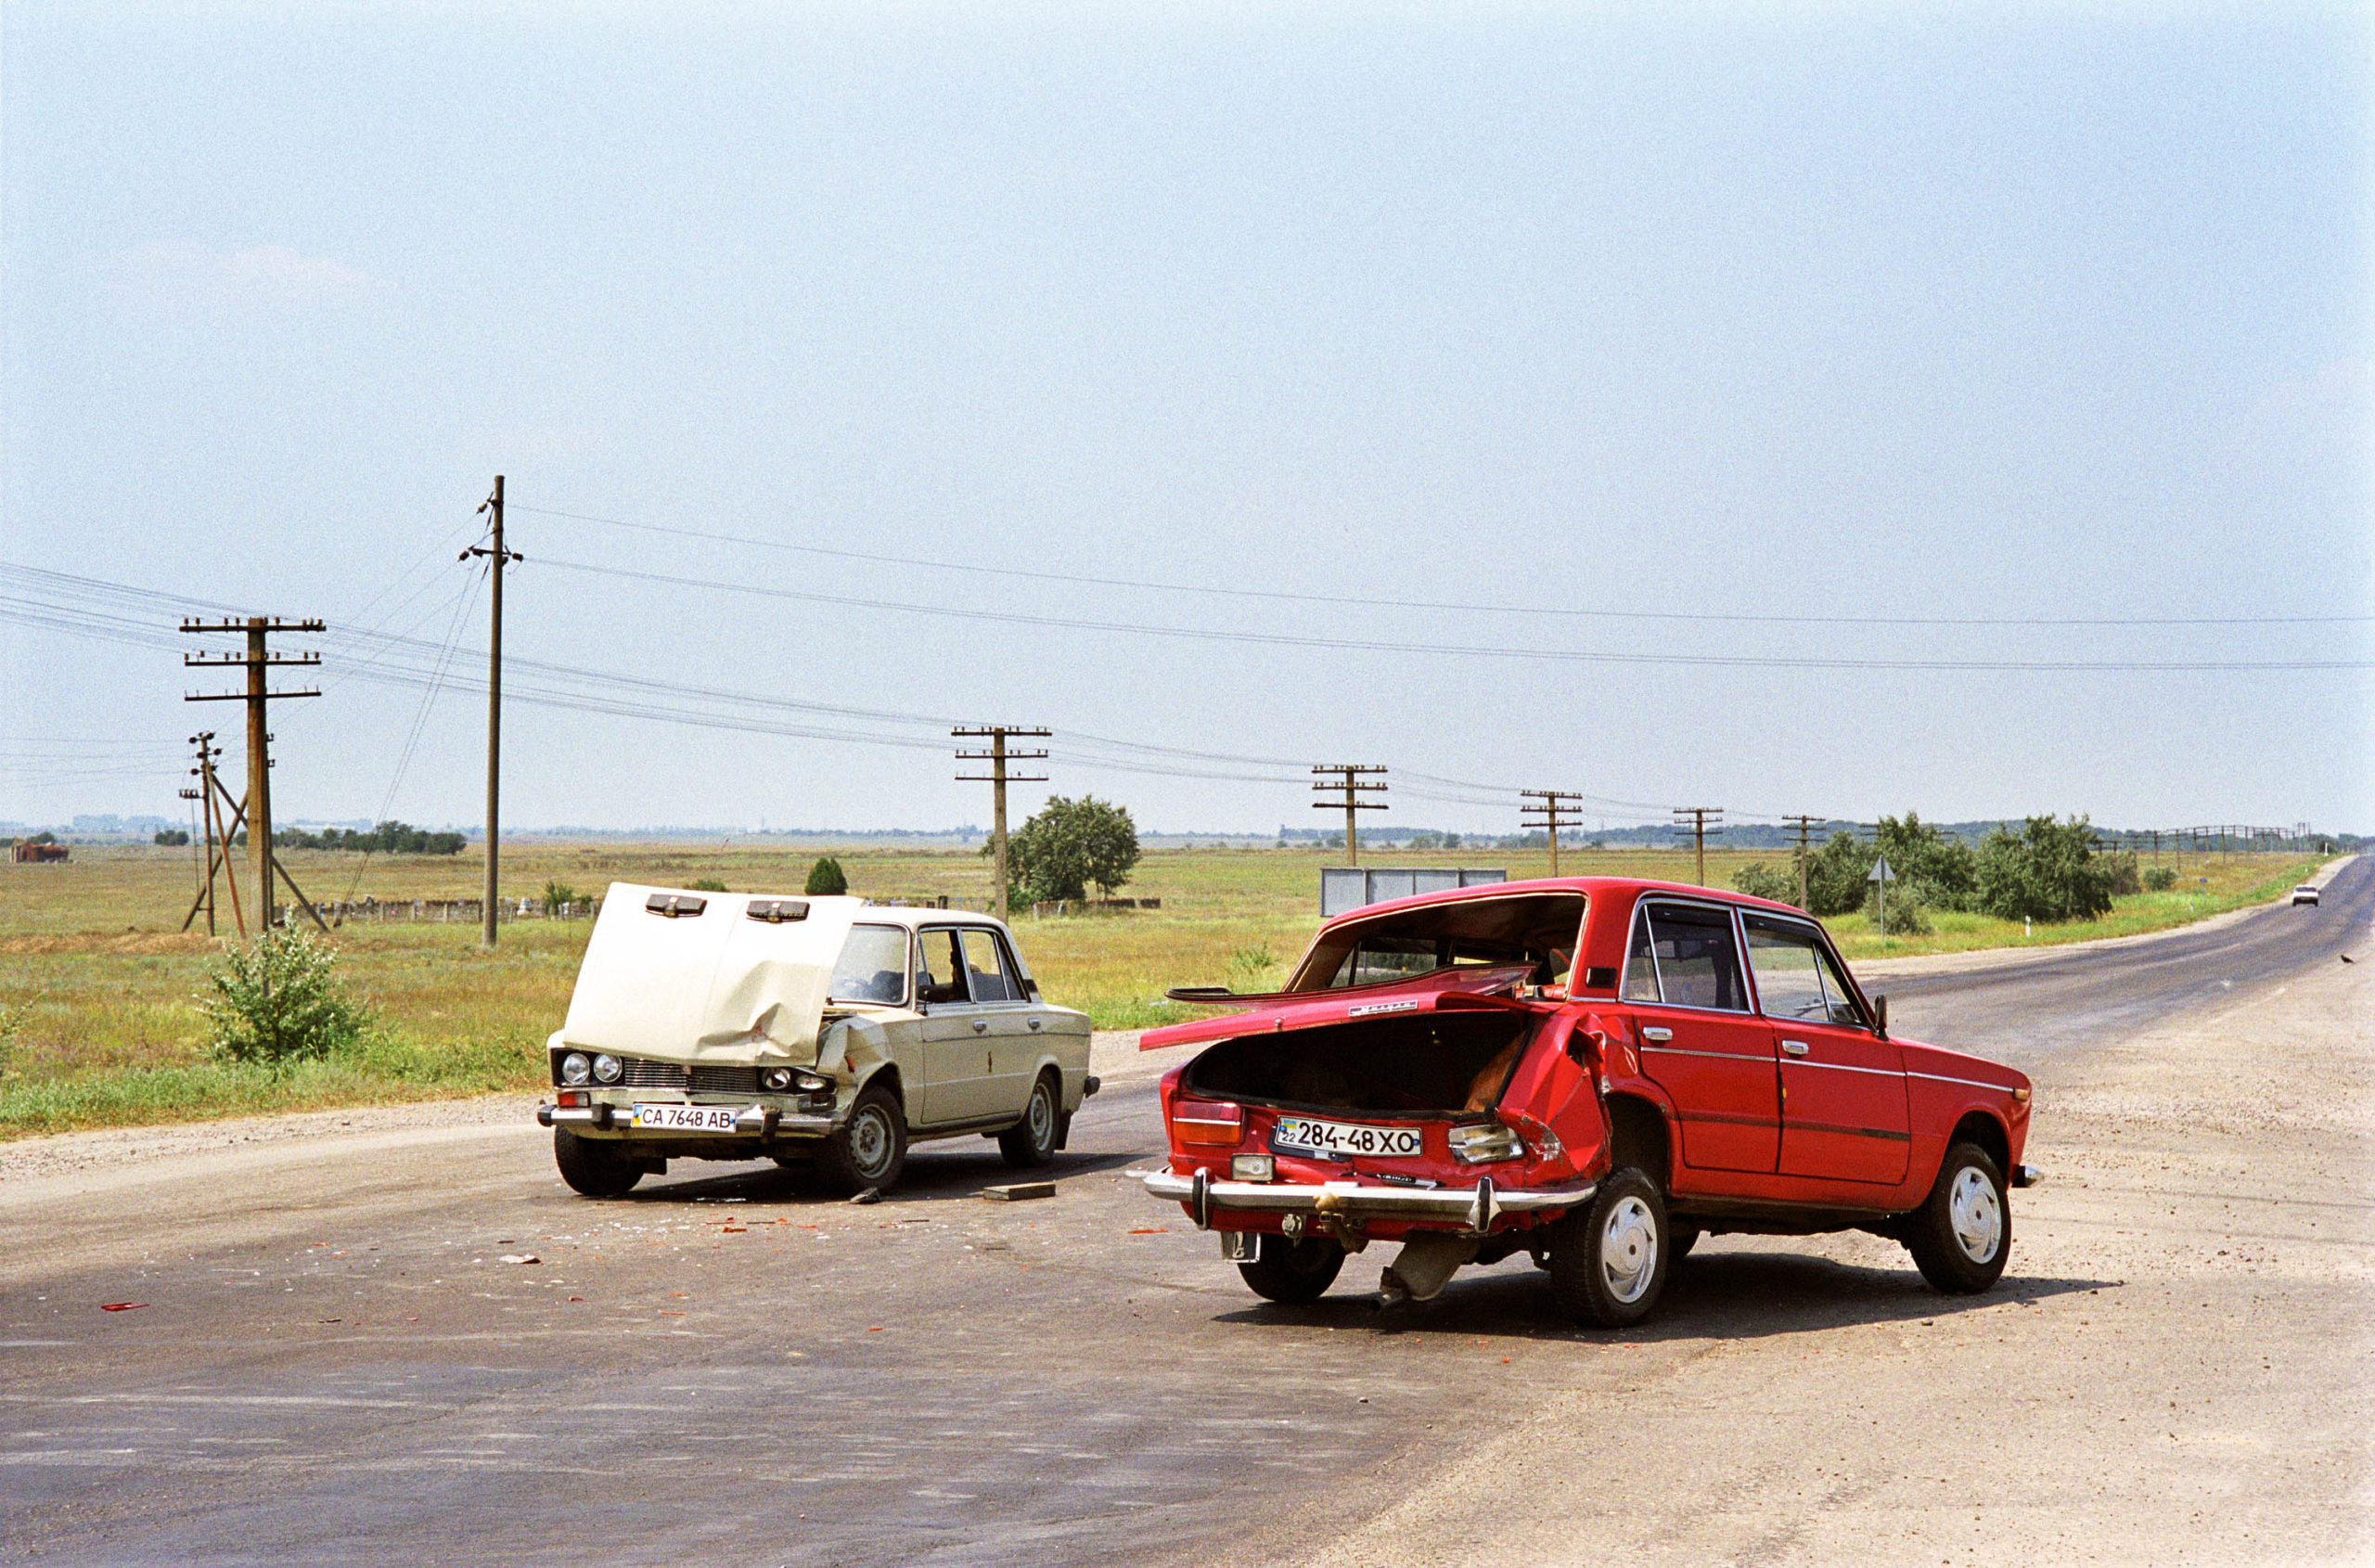 Crash #3, Lada versus Lada; Uman, Ukraine